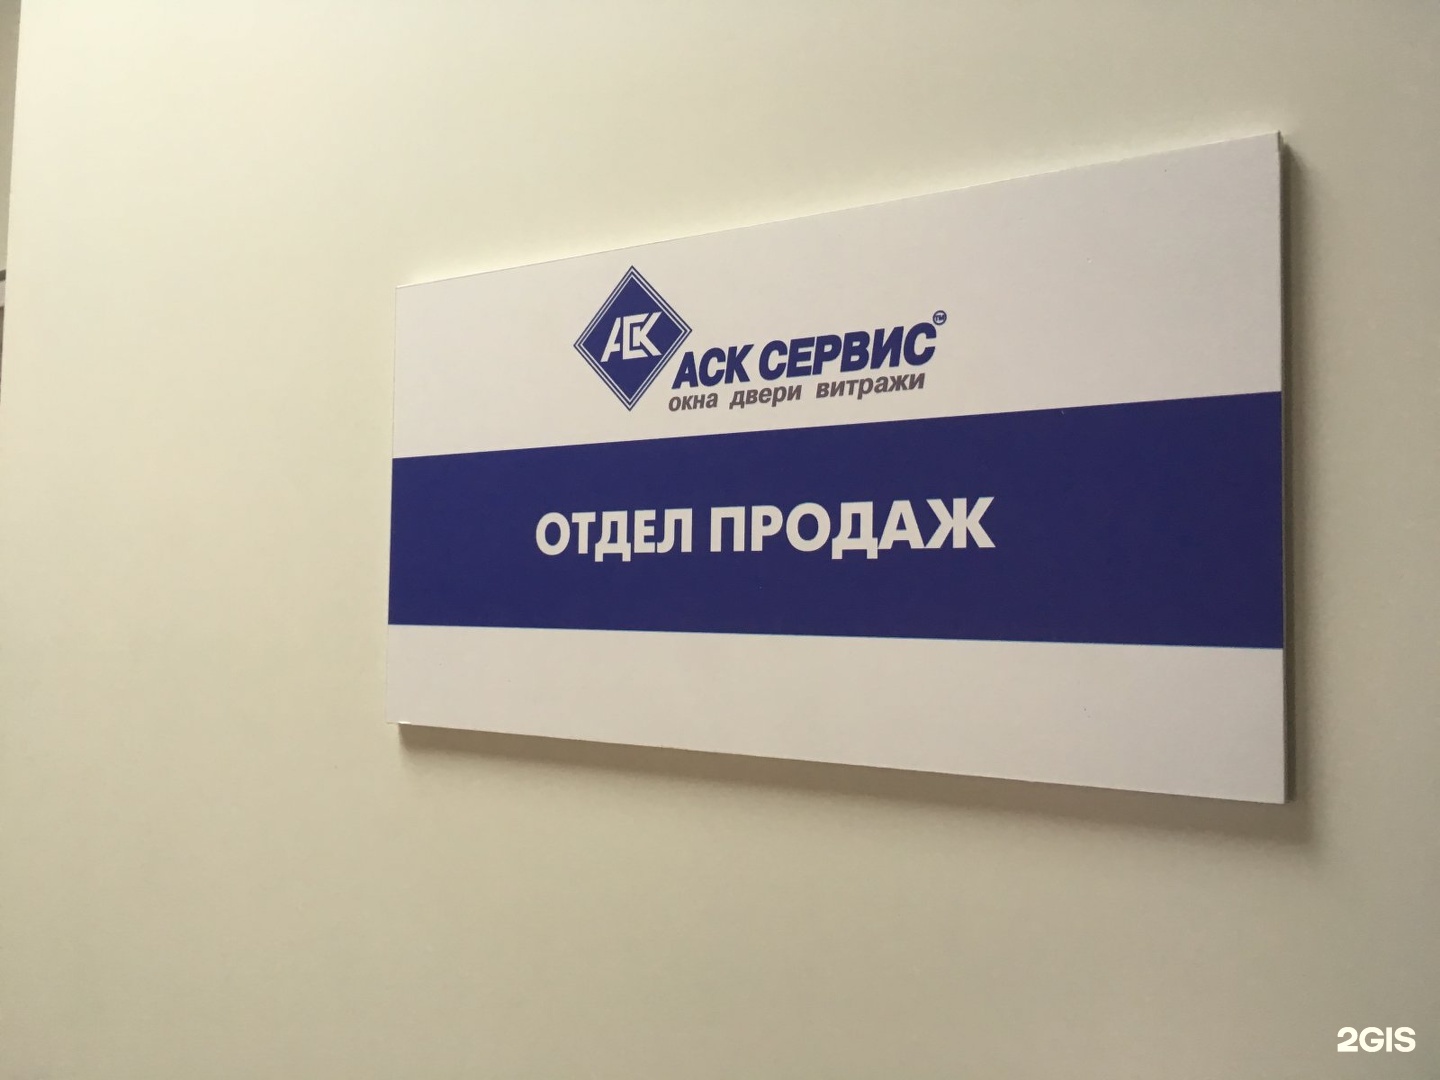 АСК сервис. АСК сервис Новосибирск. АСК сервис кондиционеры. Логотип фото АСК.